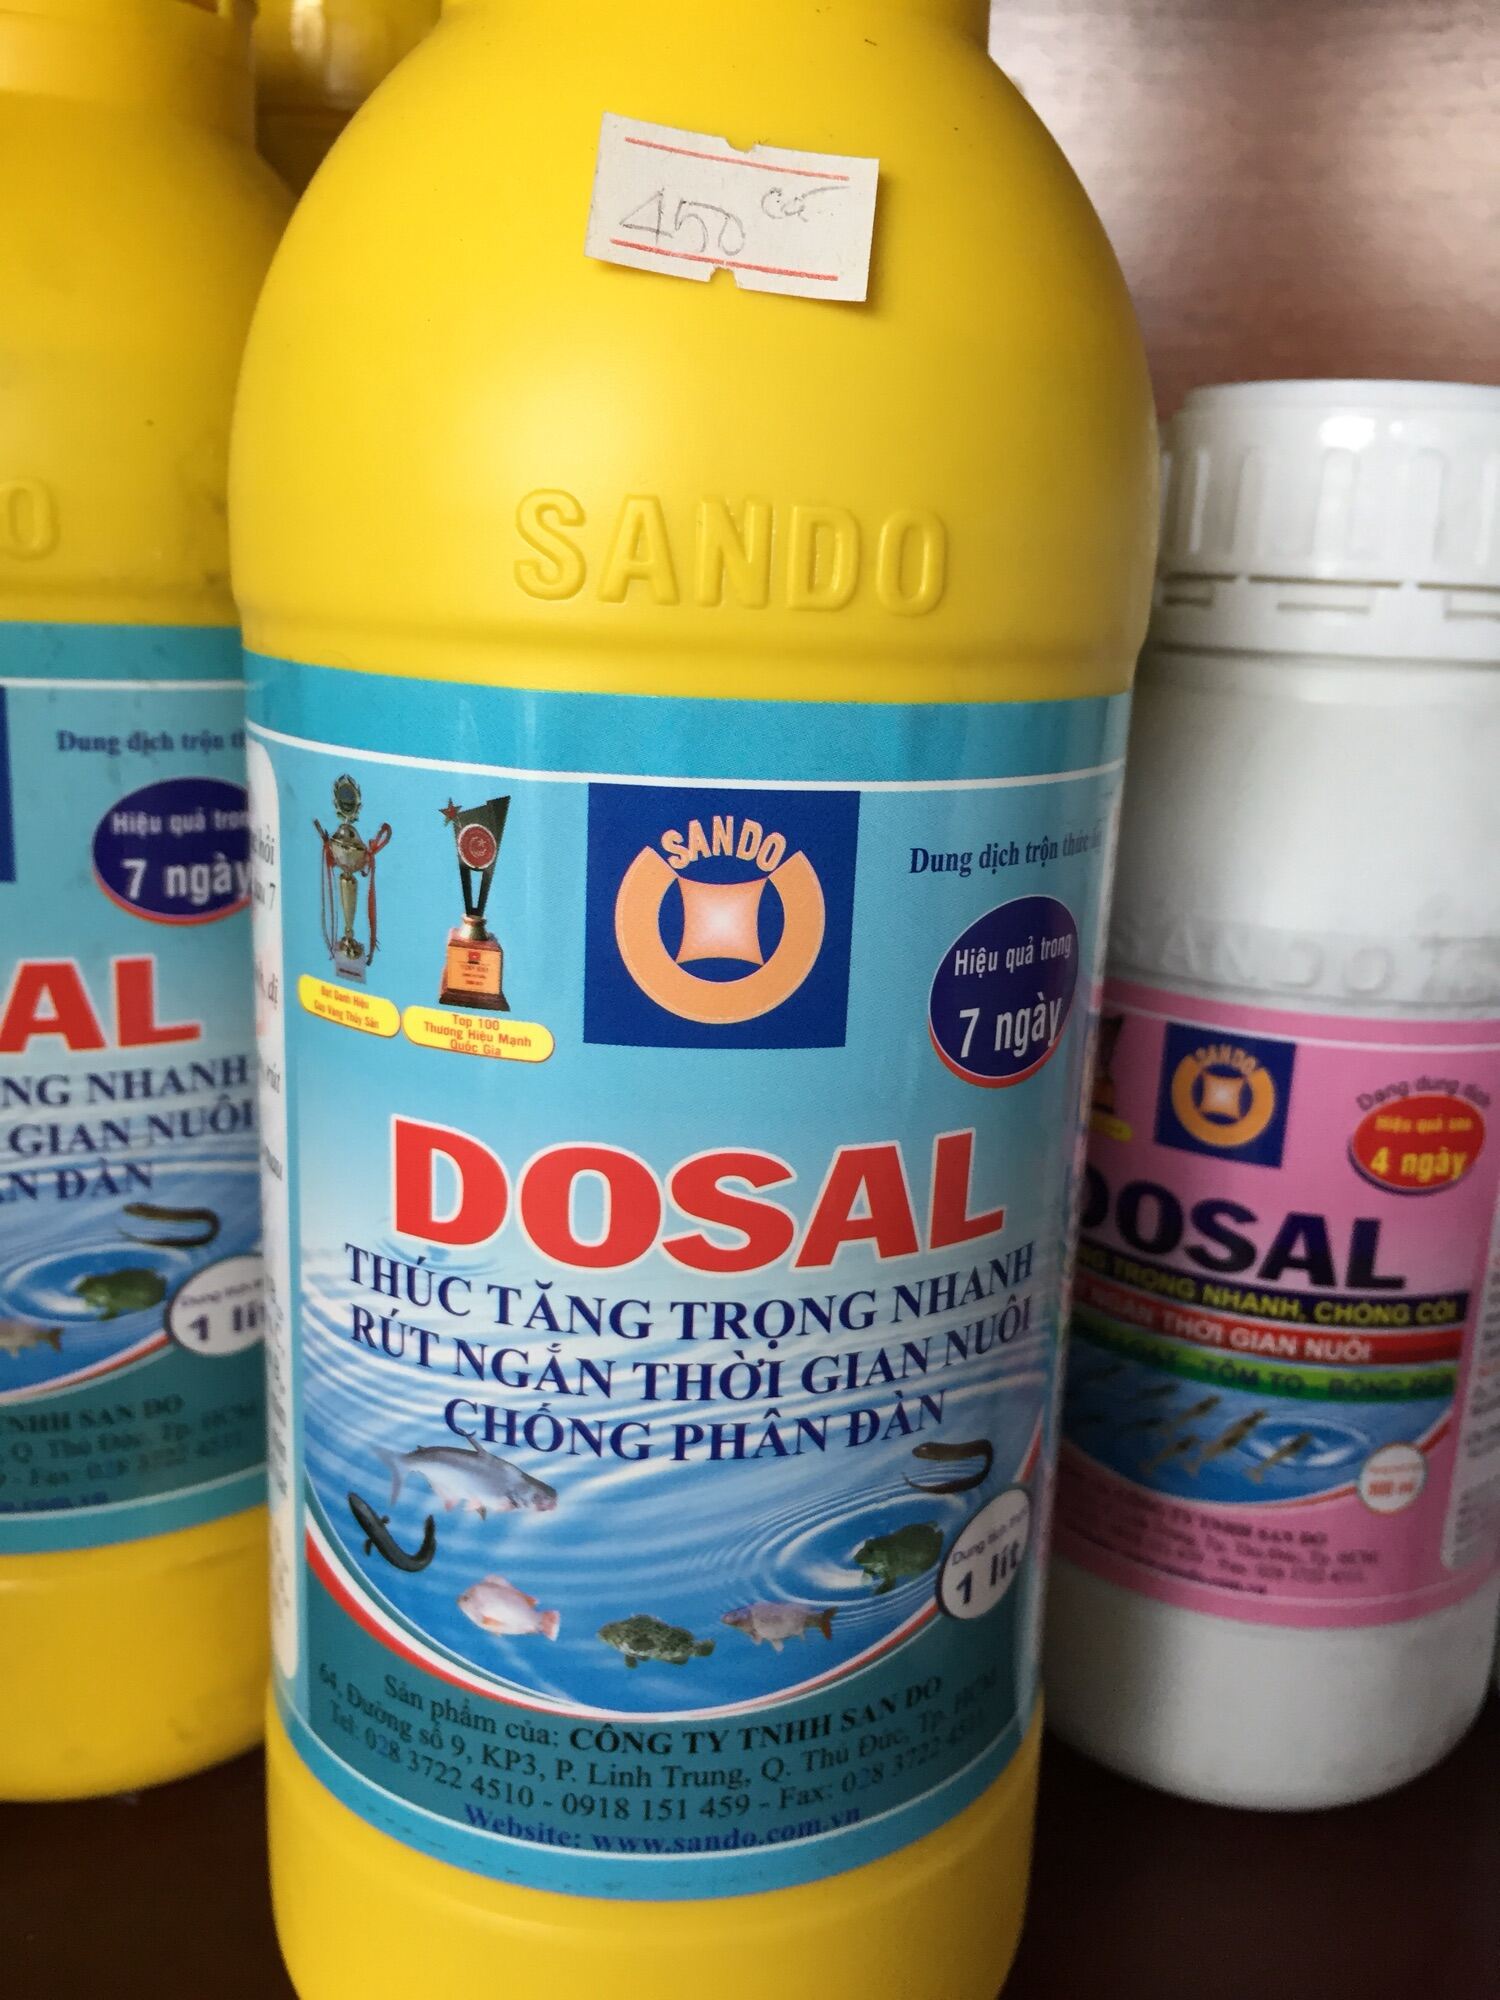 Dosal -1 lít  thúc tăng trọng cá hiệu quả sau 7 ngày